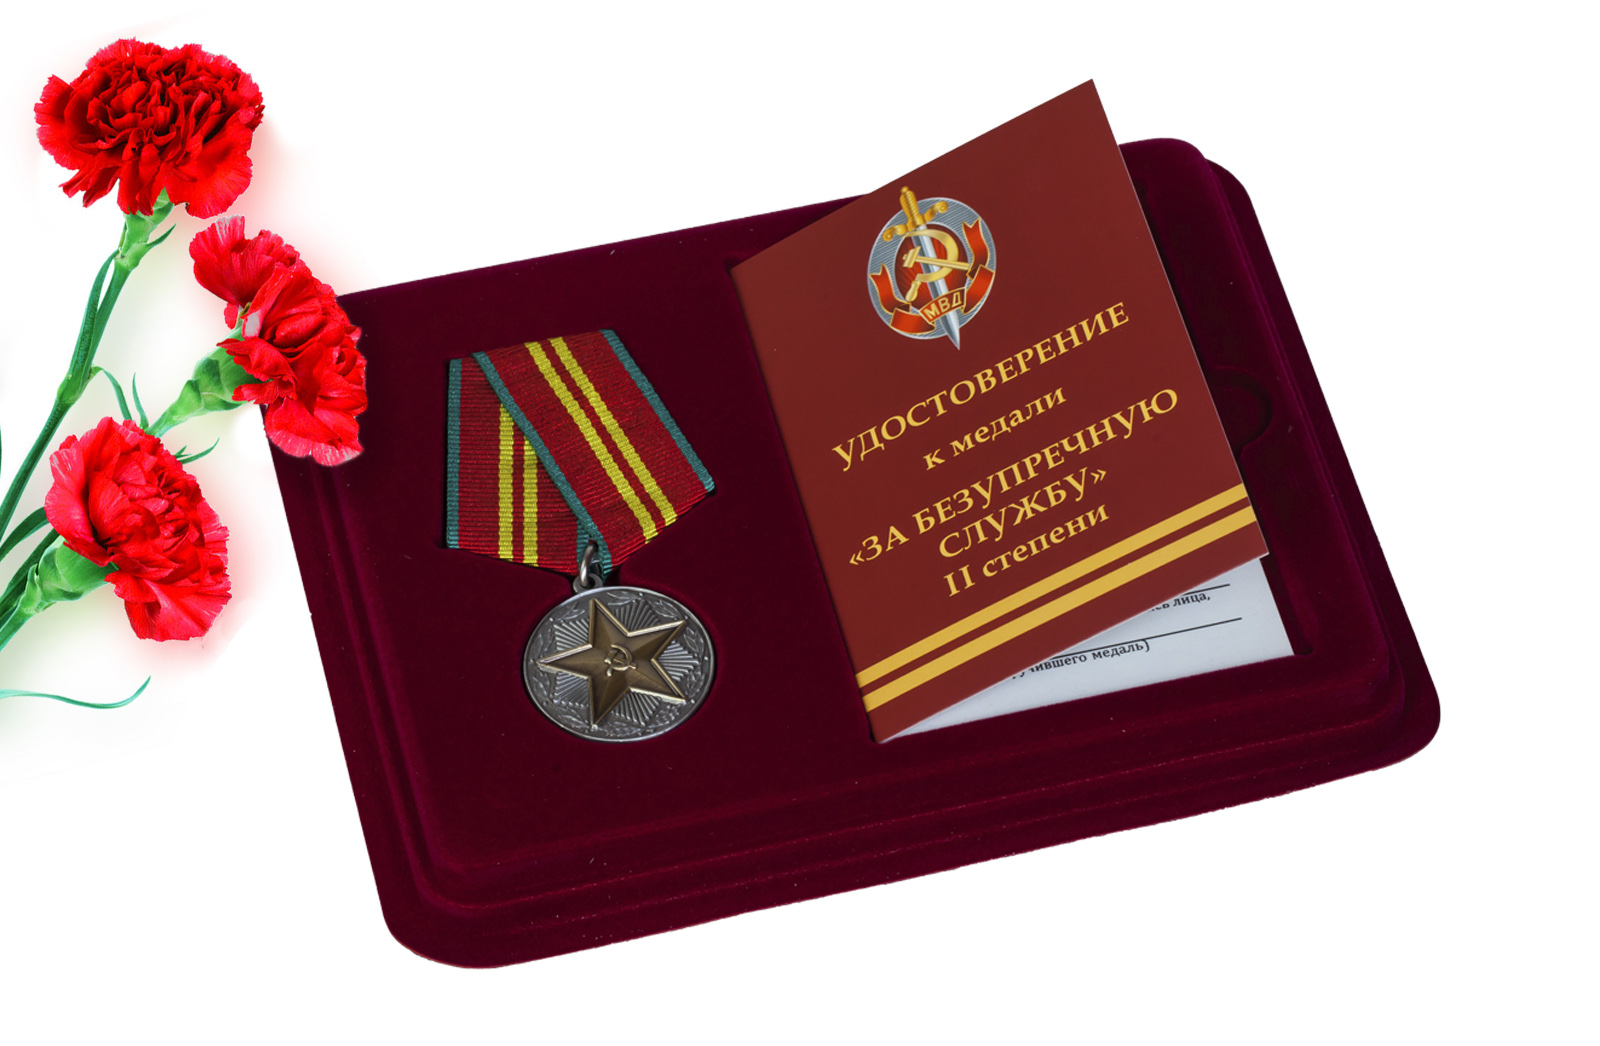 Купить медаль МВД За безупречную службу 2 степени в подарок мужчине